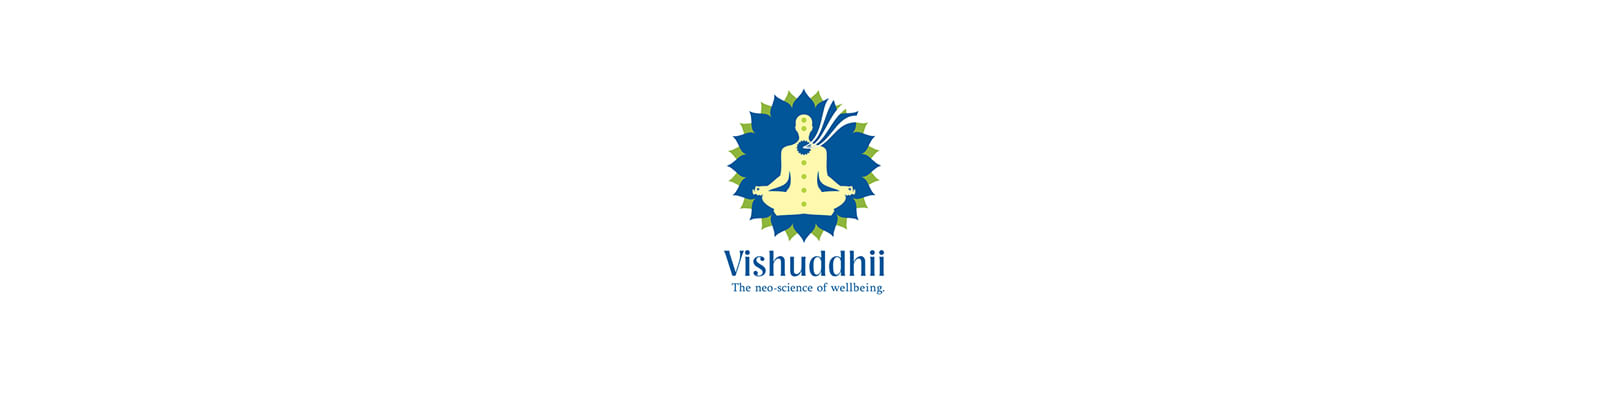 Vishuddhii